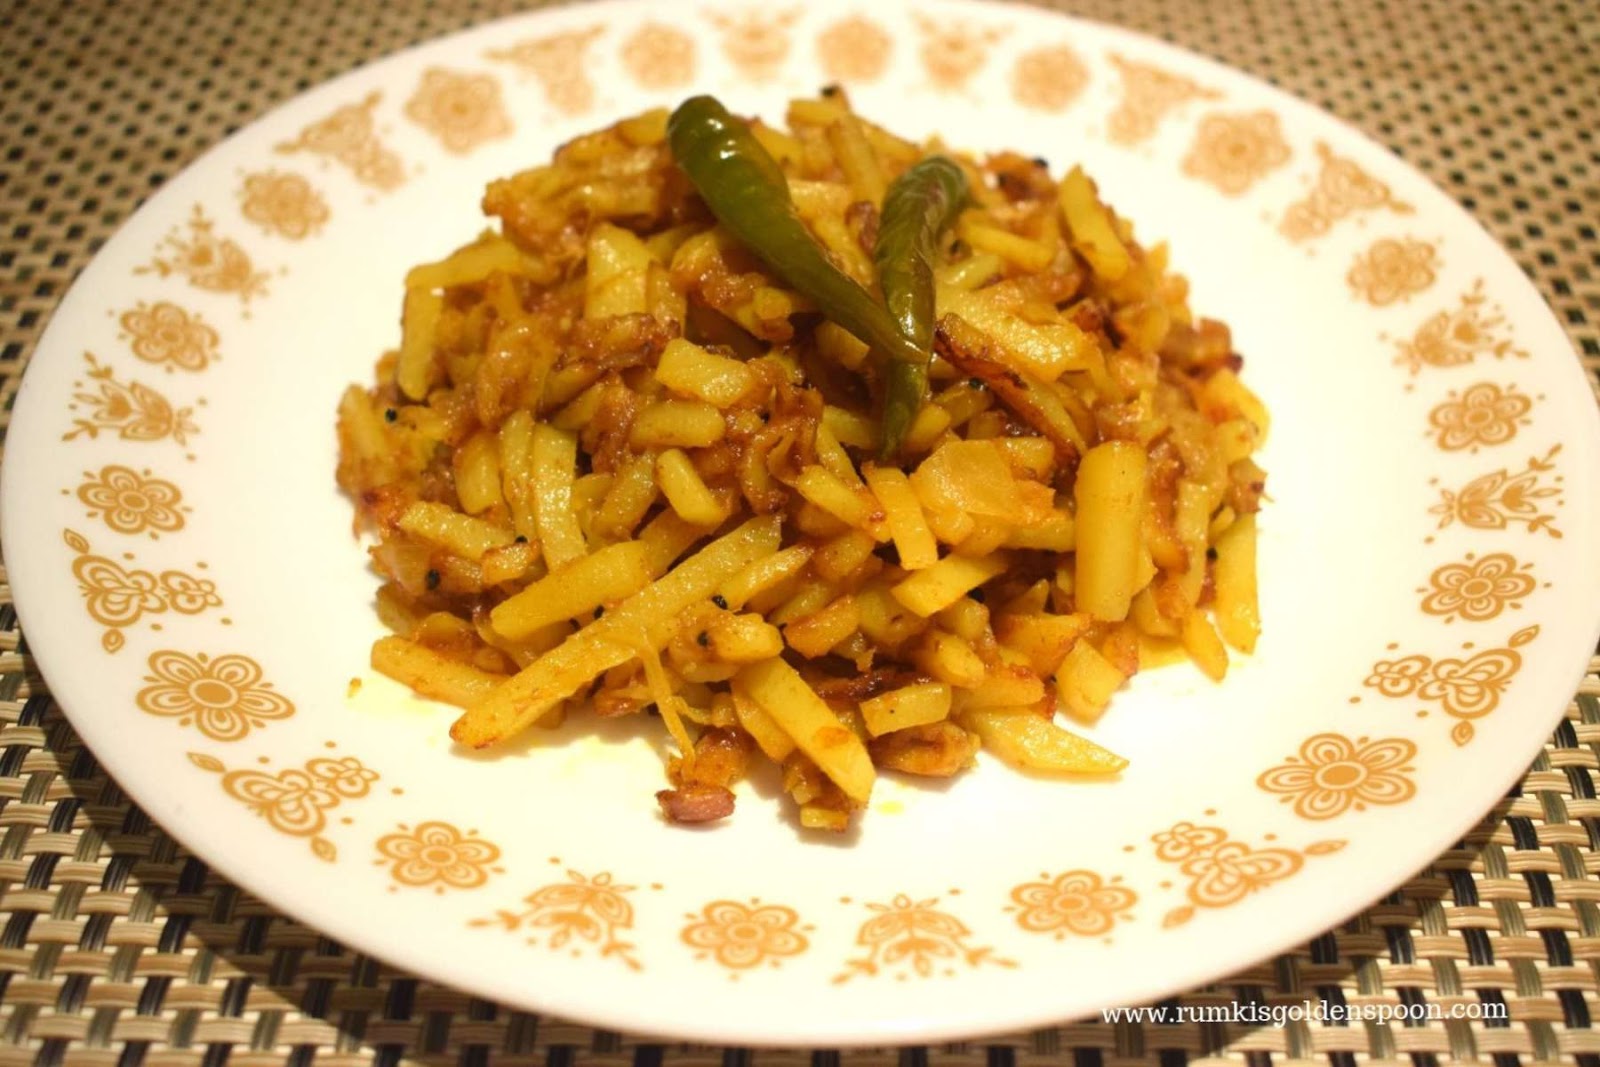 Indian Recipe, Bihari Cuisine, Vegetarian recipe, vegan recipe, Quick and Easy, Bihari style Aloo Bhaji | Spicy Potato Fry, Rumki's Golden Spoon, Spicy potato dry curry, Indian recipe with potatoes, aloo bhaja, sukhi aloo ki sabzi/sabji